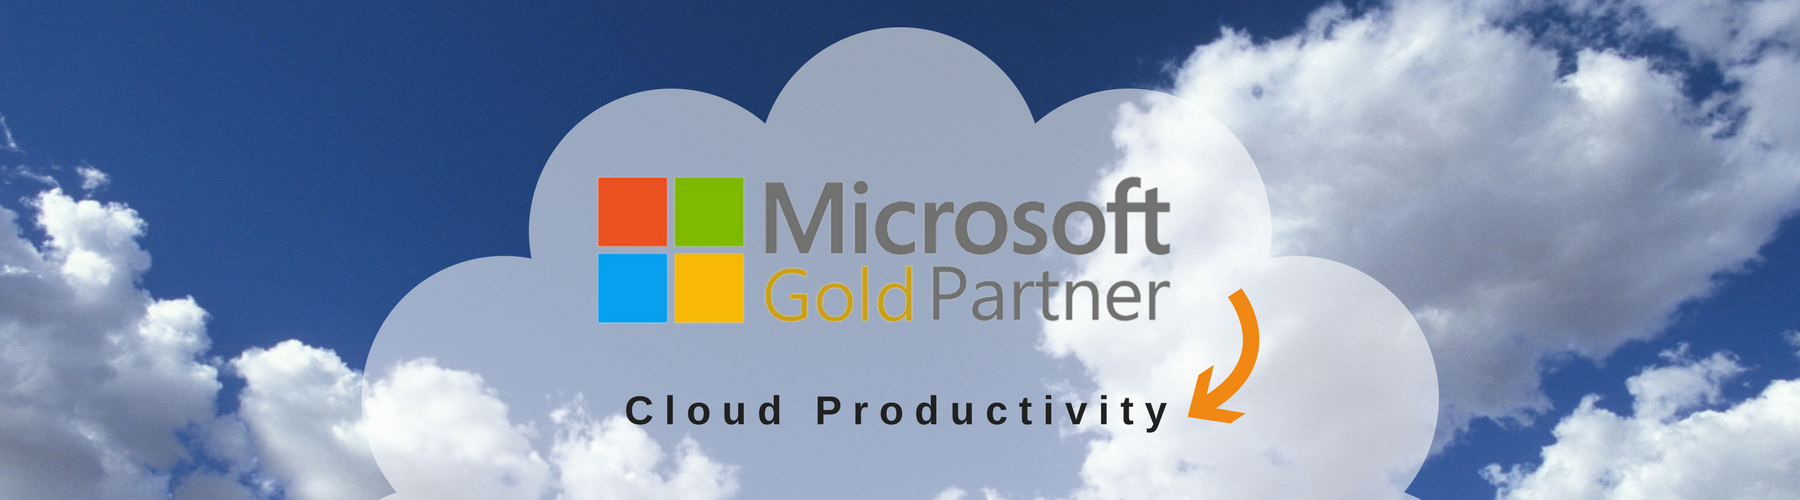 MS Cloud Productivity - Website.png